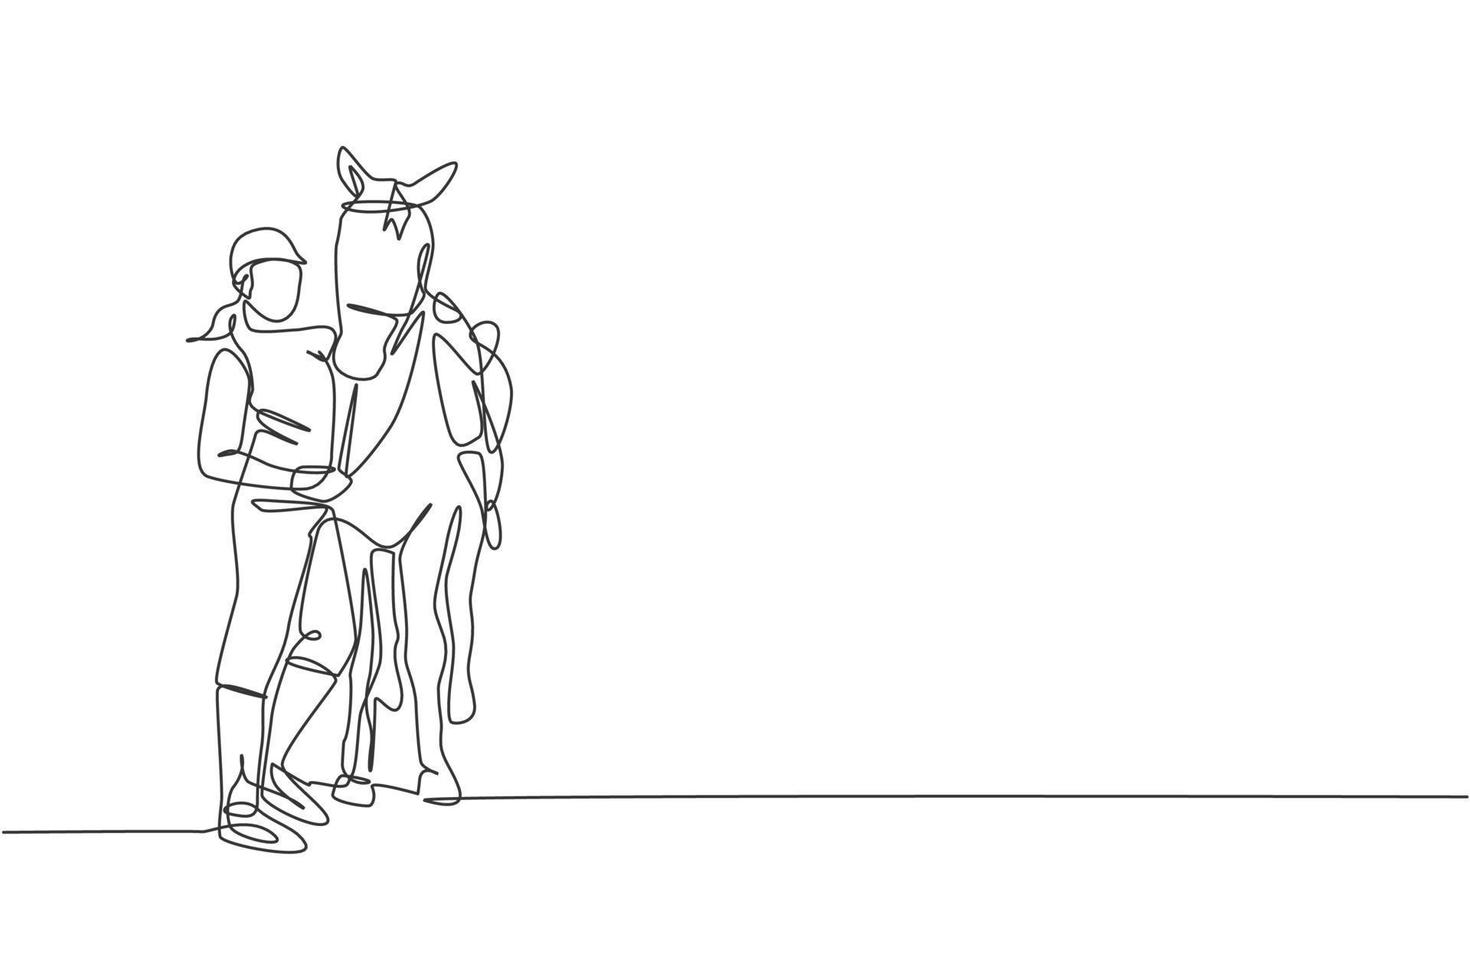 única linha contínua desenhando jovem cavaleiro profissional abraçando e esfregando sua crina. conceito de processo de treinamento de esporte equestre. ilustração gráfica de vetor de design de desenho de uma linha na moda